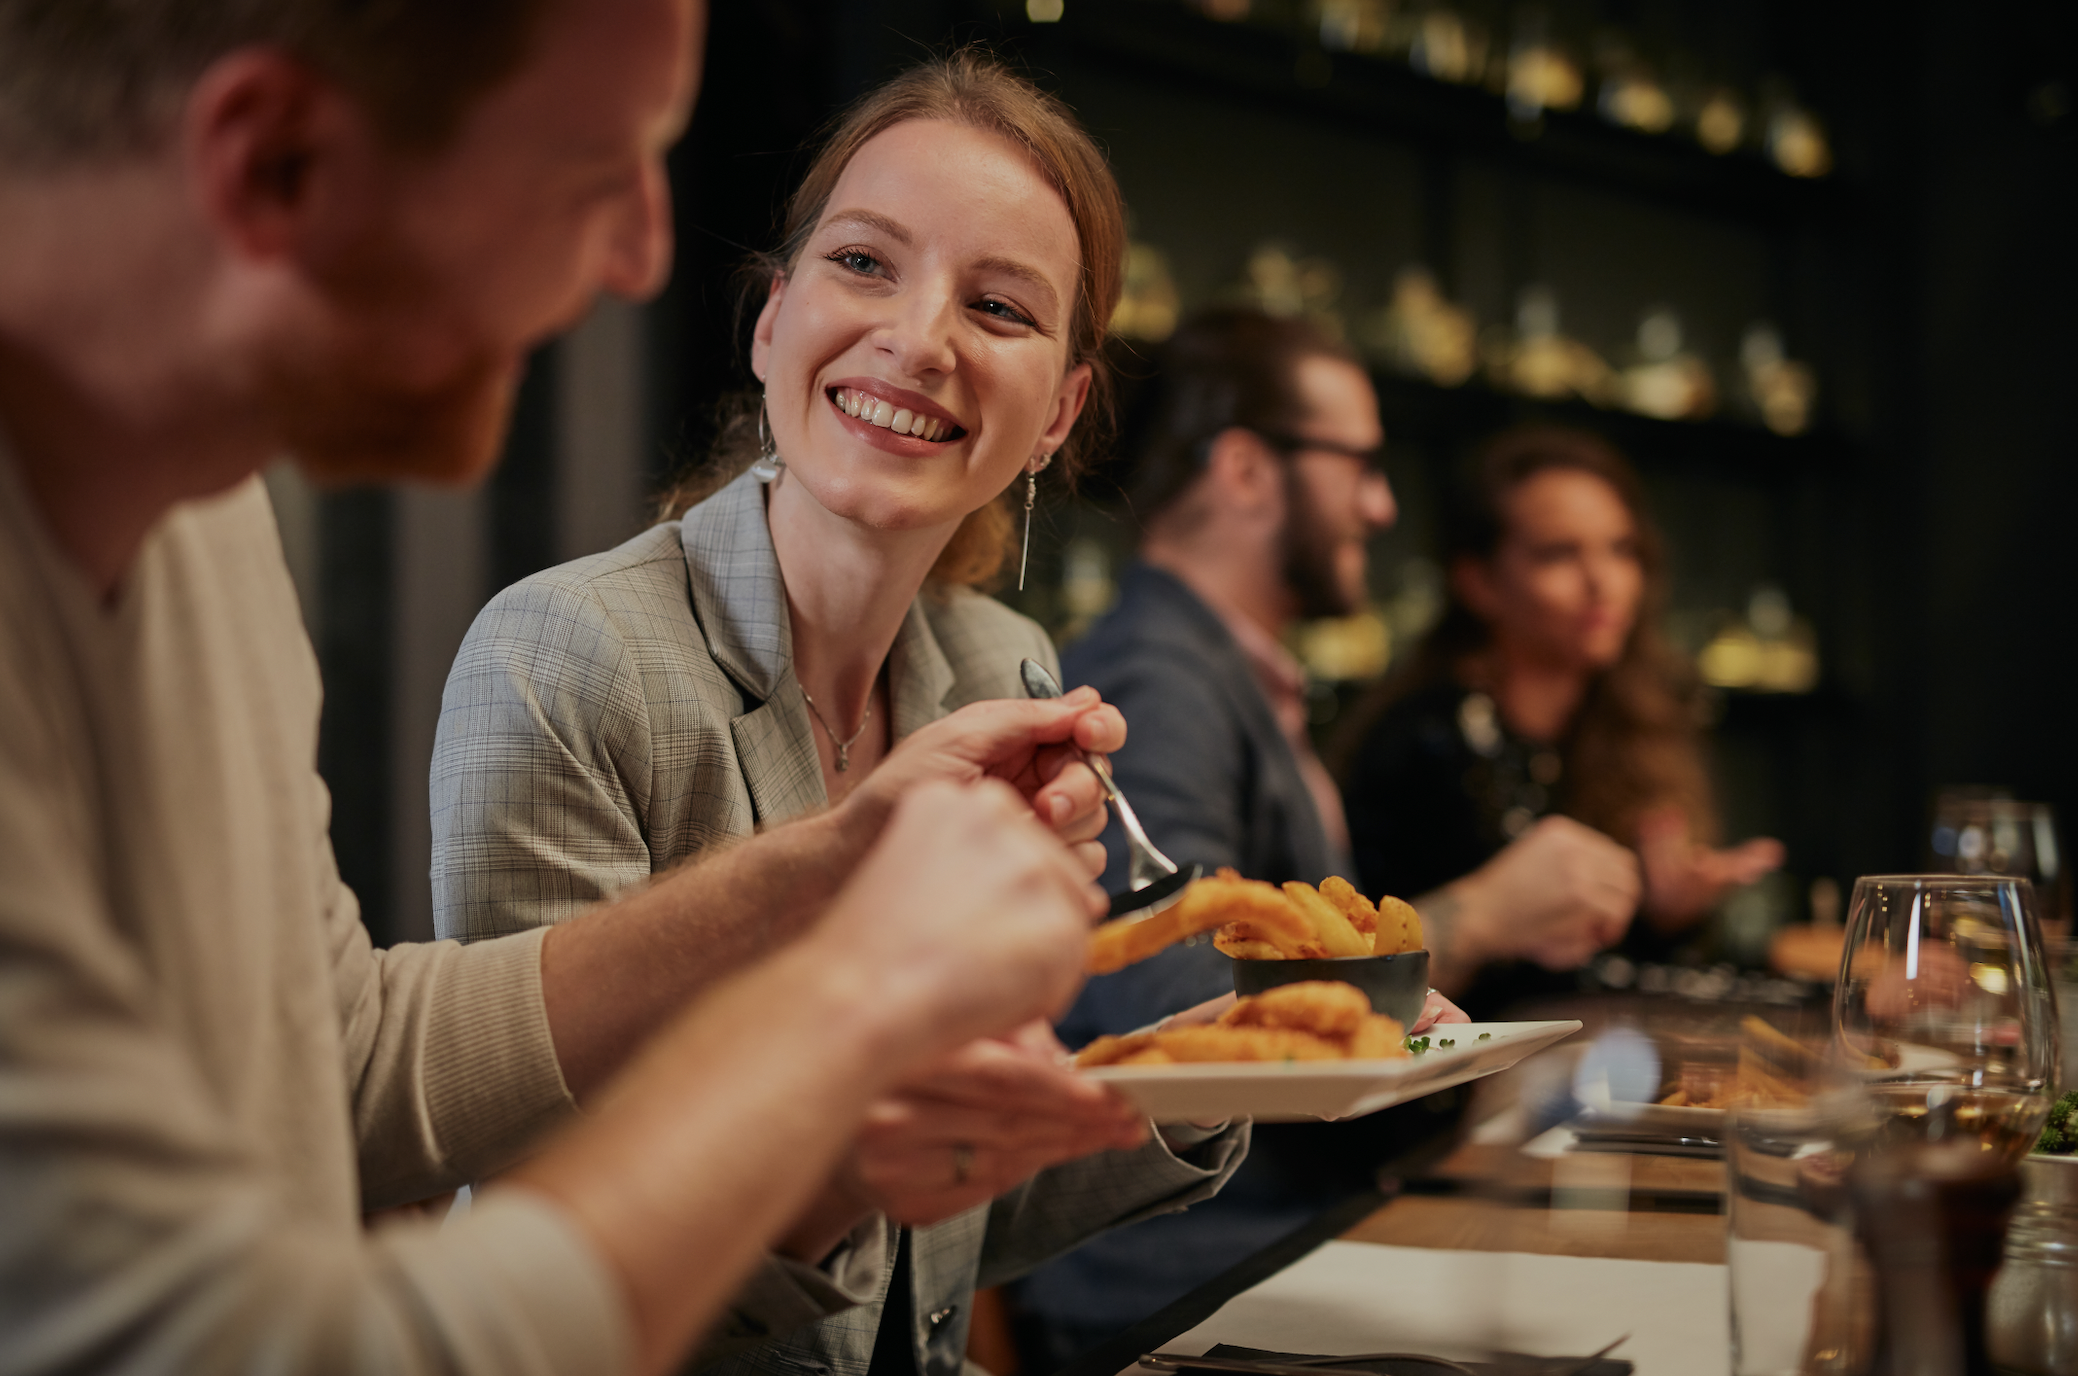 Eine junge Frau lächelt dem Mann im Restaurant zu | Quelle: Shutterstock